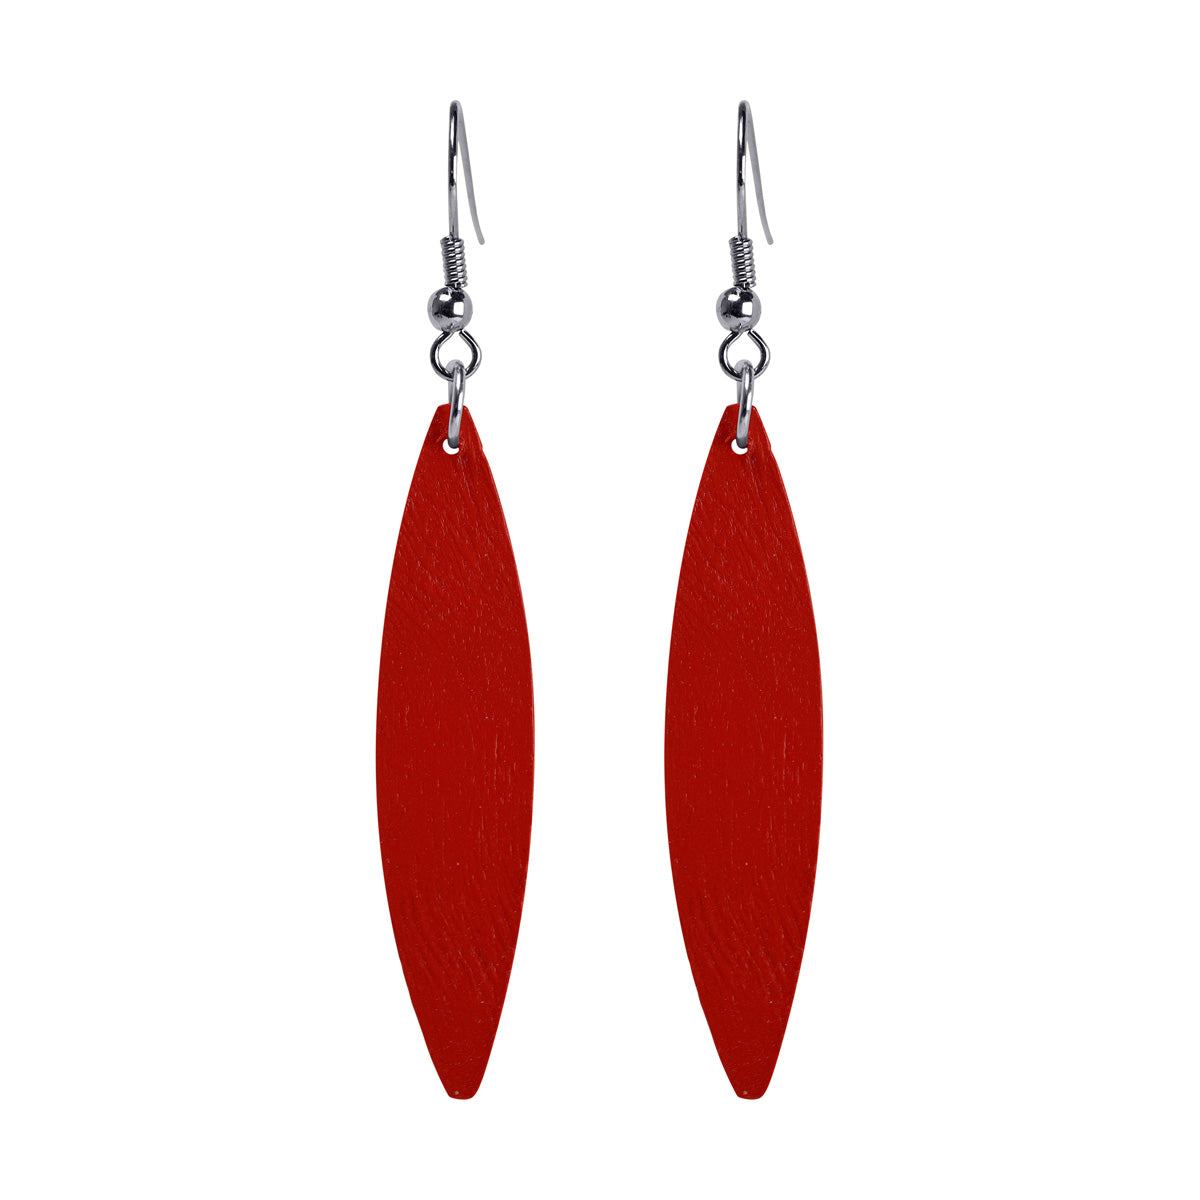 Domestic wooden earrings ovals (steel 316L)